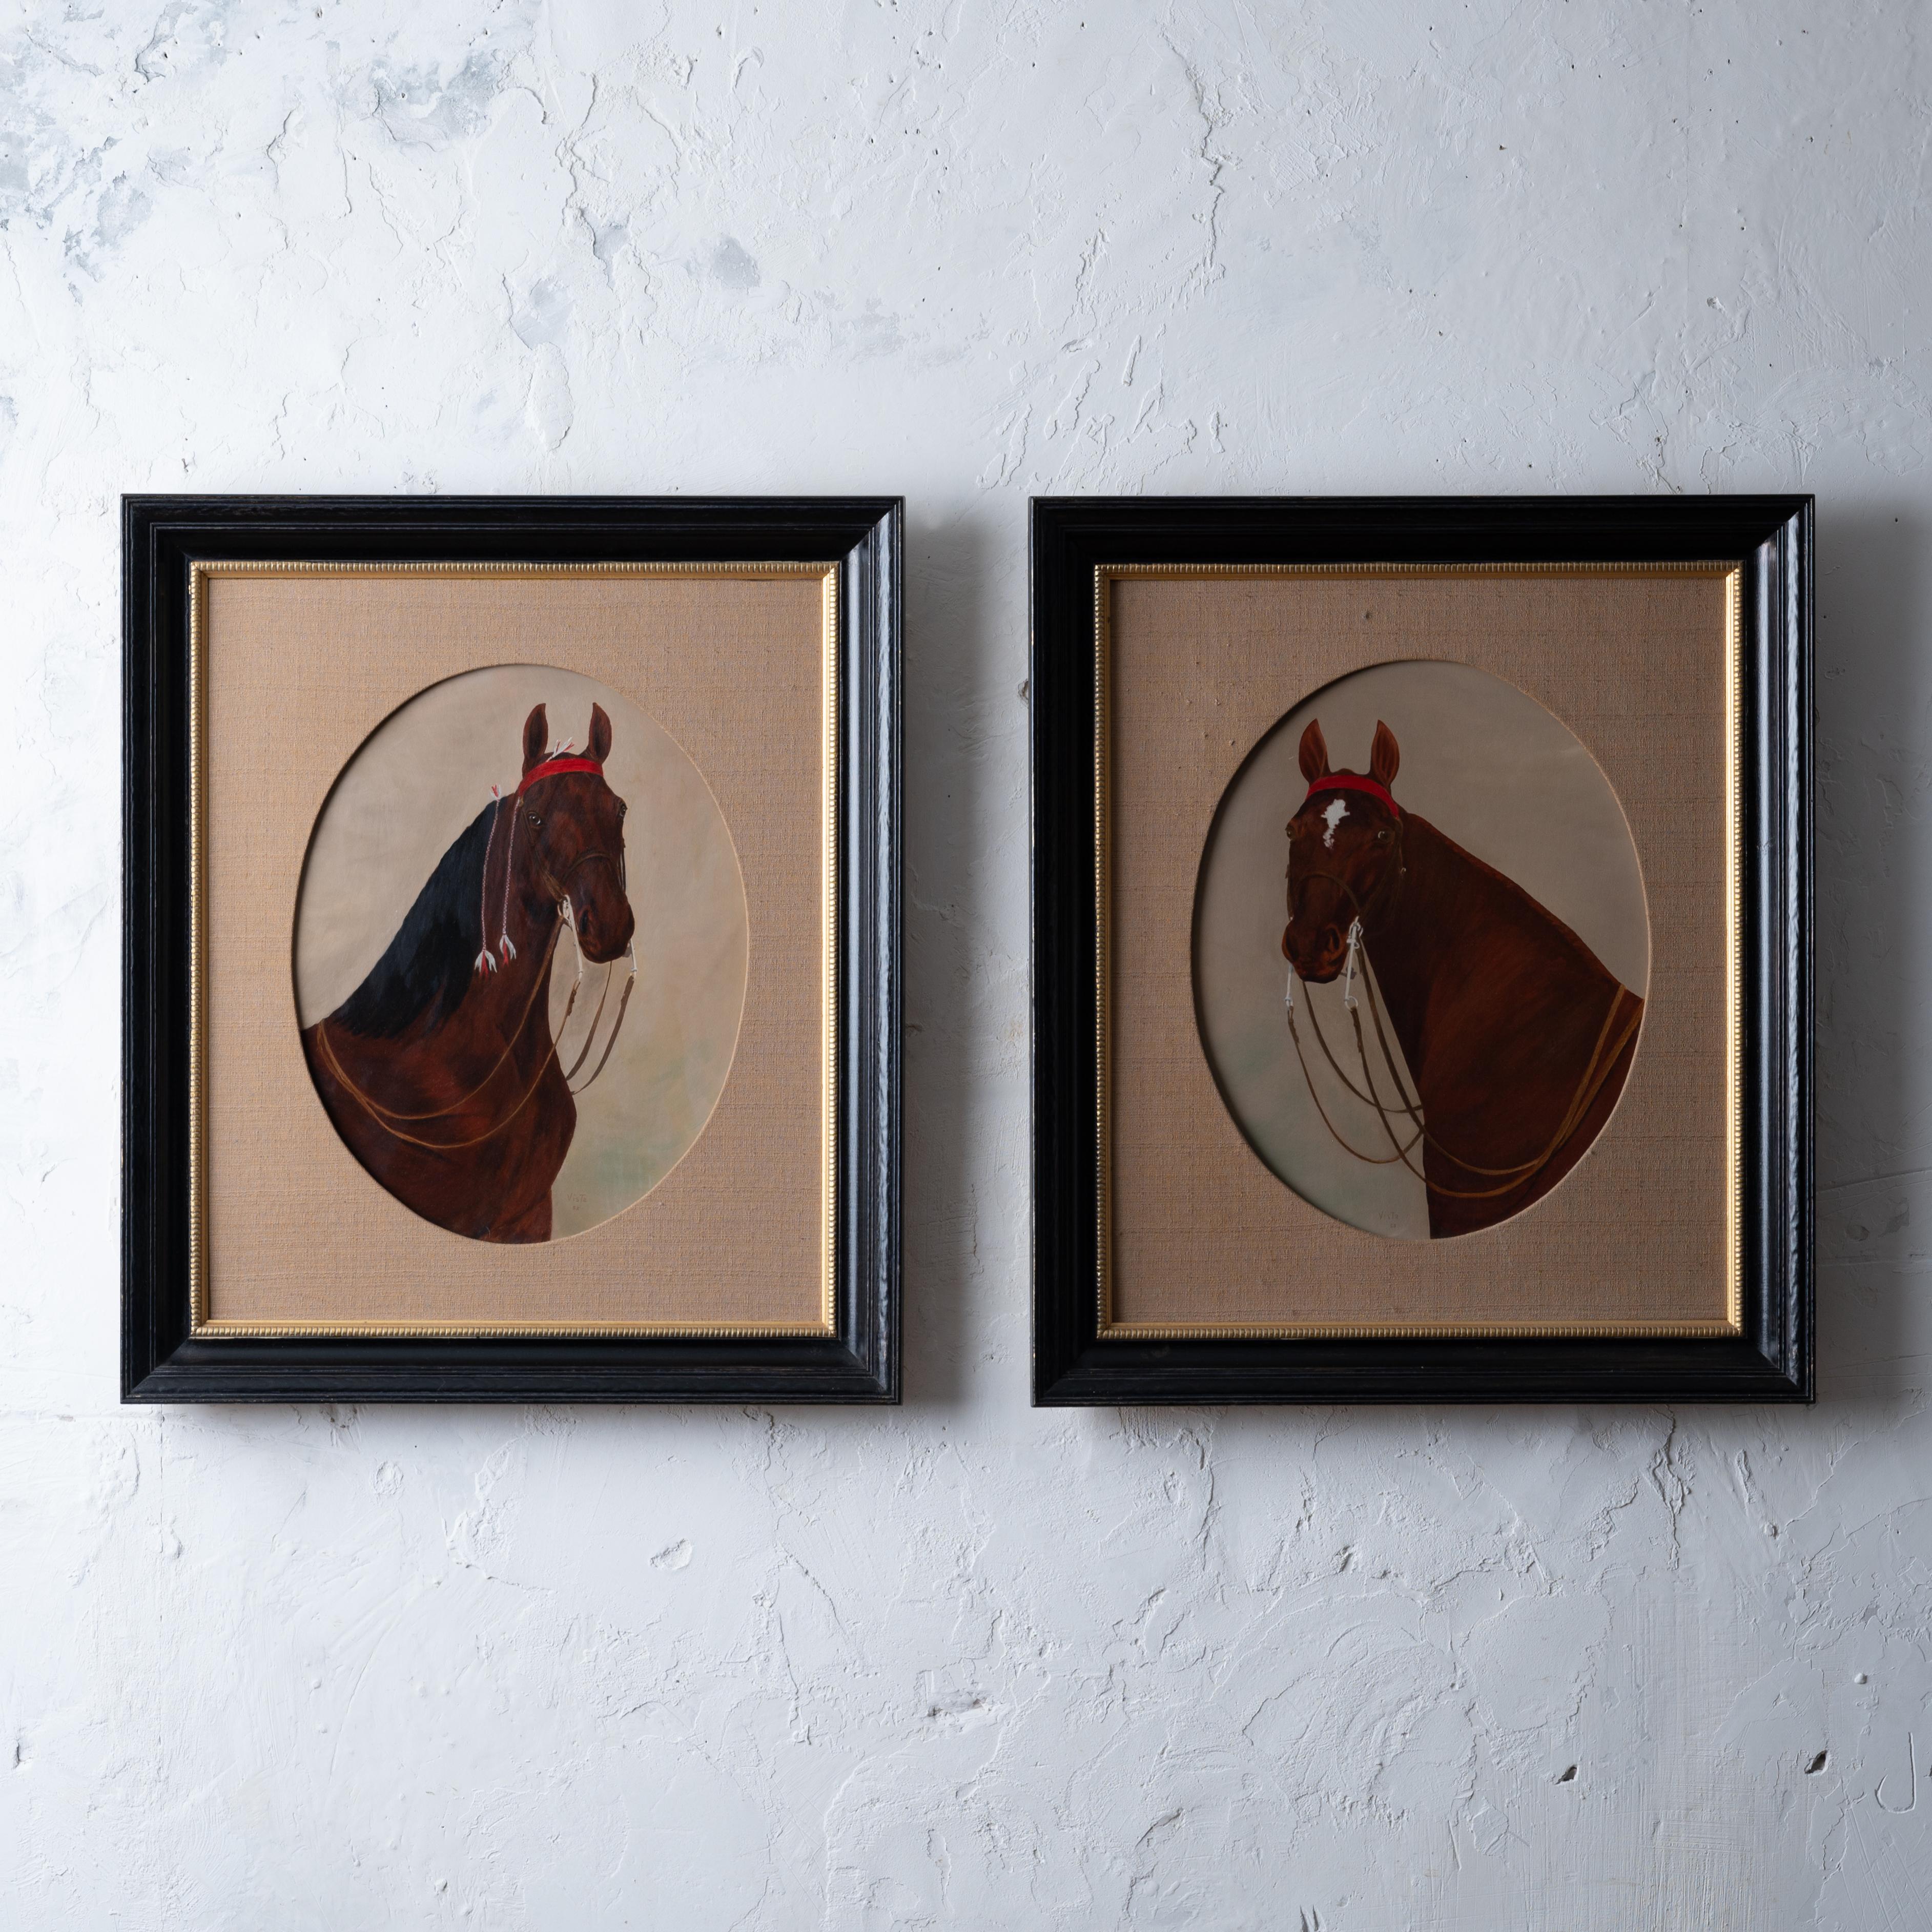 Ein Paar Pferdeporträts, signiert Vista, 1955.  
Öl auf Karton unter ovalem, mit Leinen umwickeltem Passepartout in ebonisiertem und vergoldetem Rahmen montiert.

Sicht: 14 ¼ mal 18 ¼ Zoll
Rahmen: 24 ½ mal 28 ½ Zoll

